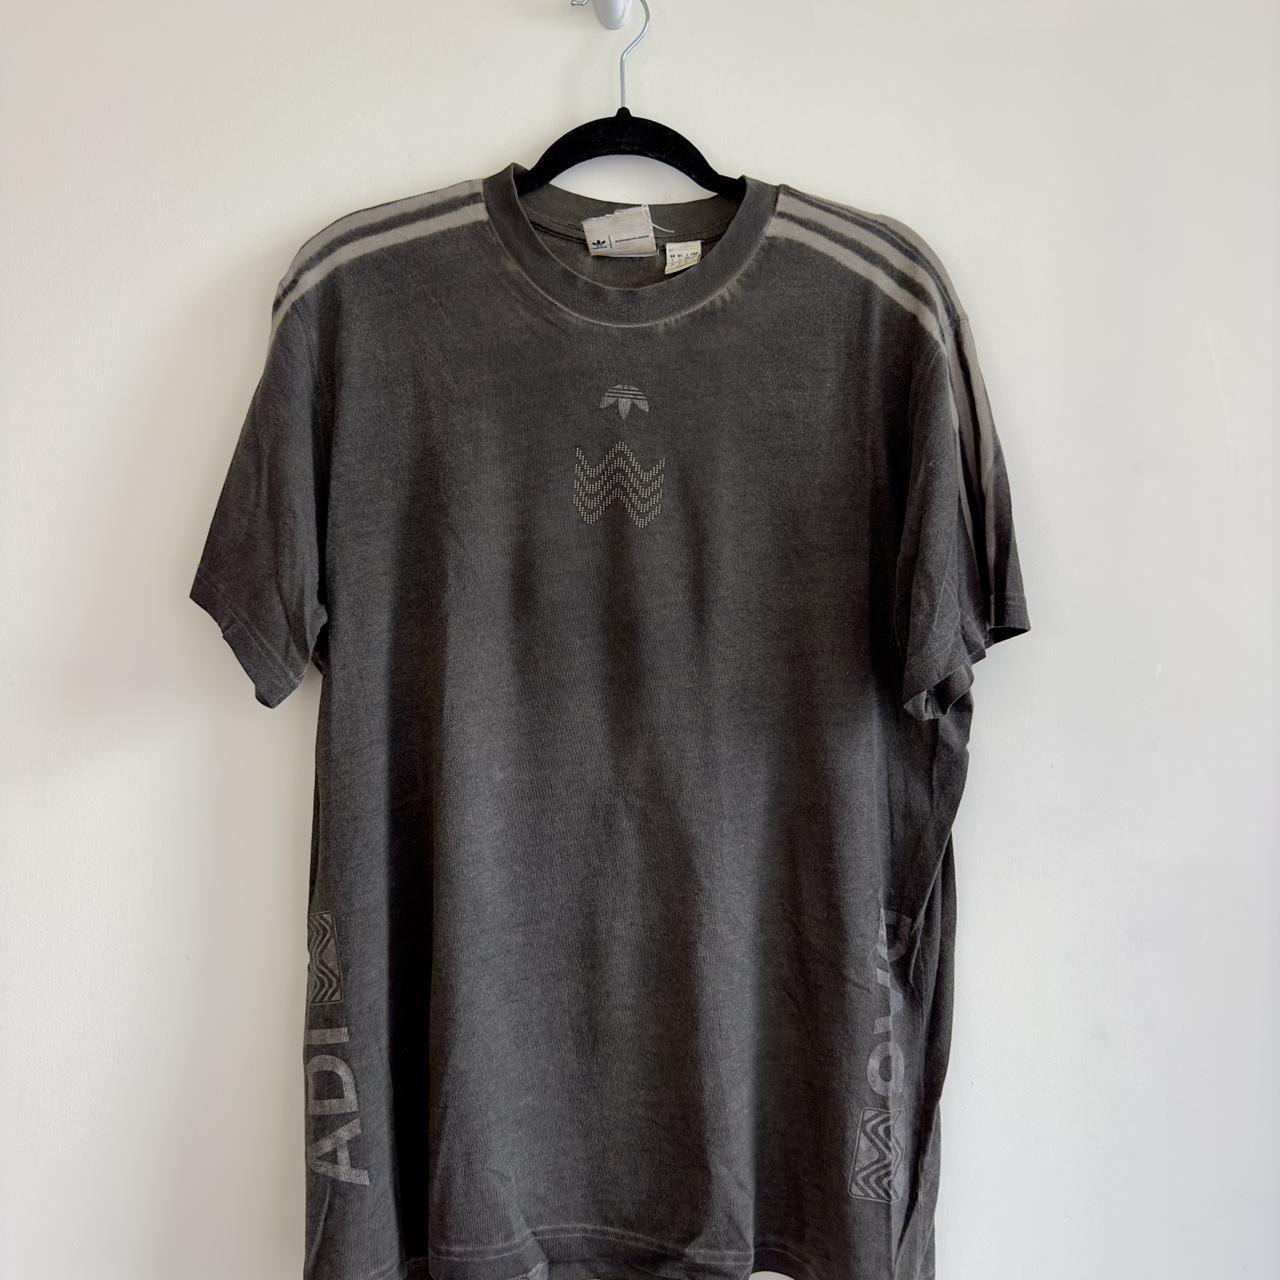 Adidas Originals Men's Grey T-shirt | Depop